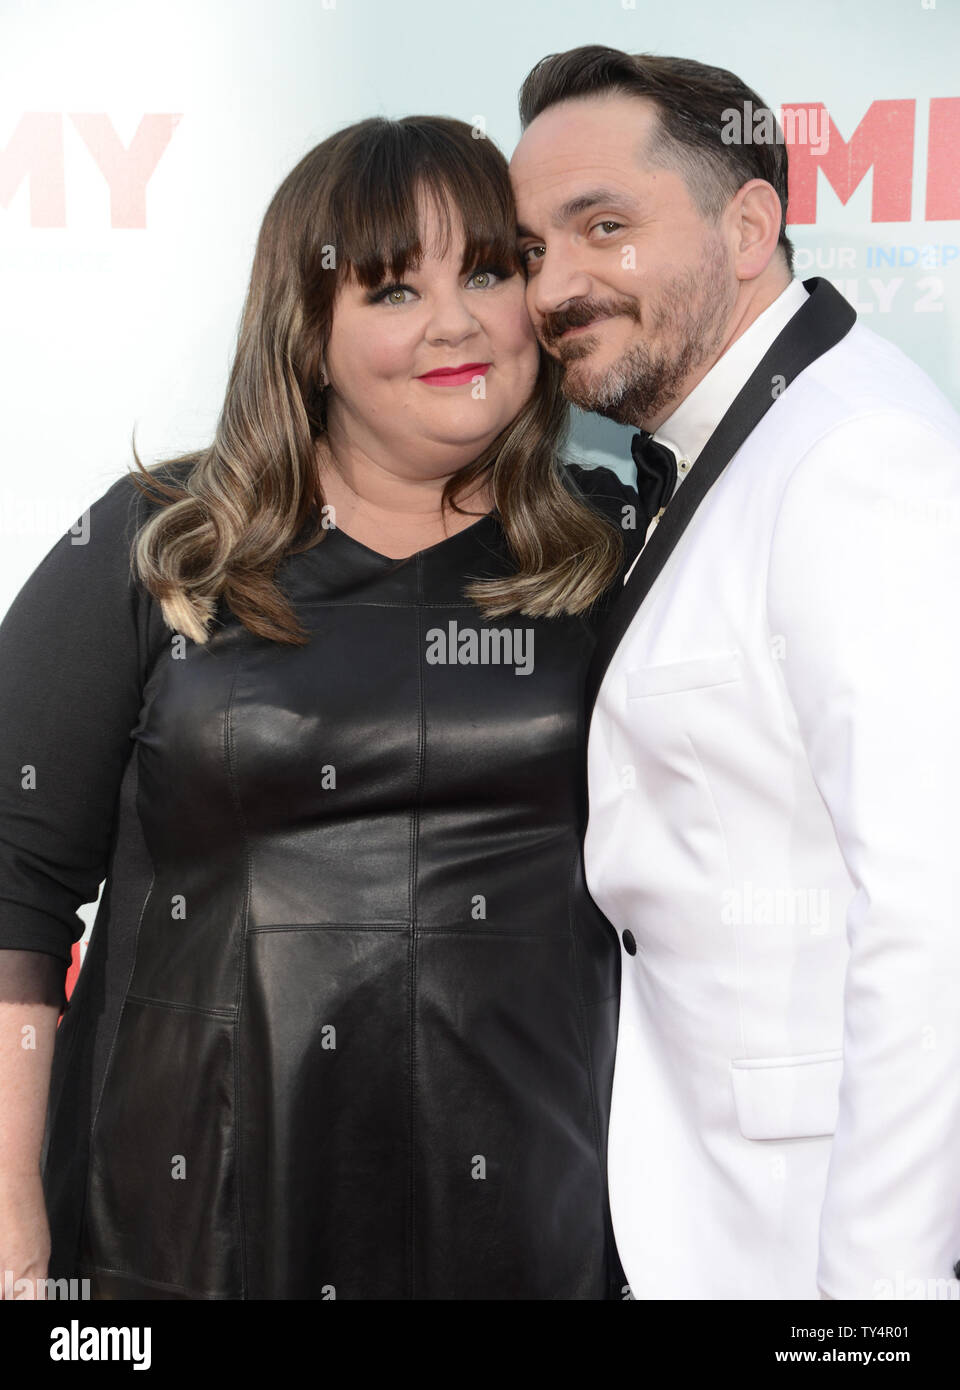 Réalisateur Ben Falcone (R) acteur et Melissa McCarthy (L) assister à la première de "Tammy" à Los Angeles le 30 juin 2014. UPI/Phil McCarten Banque D'Images